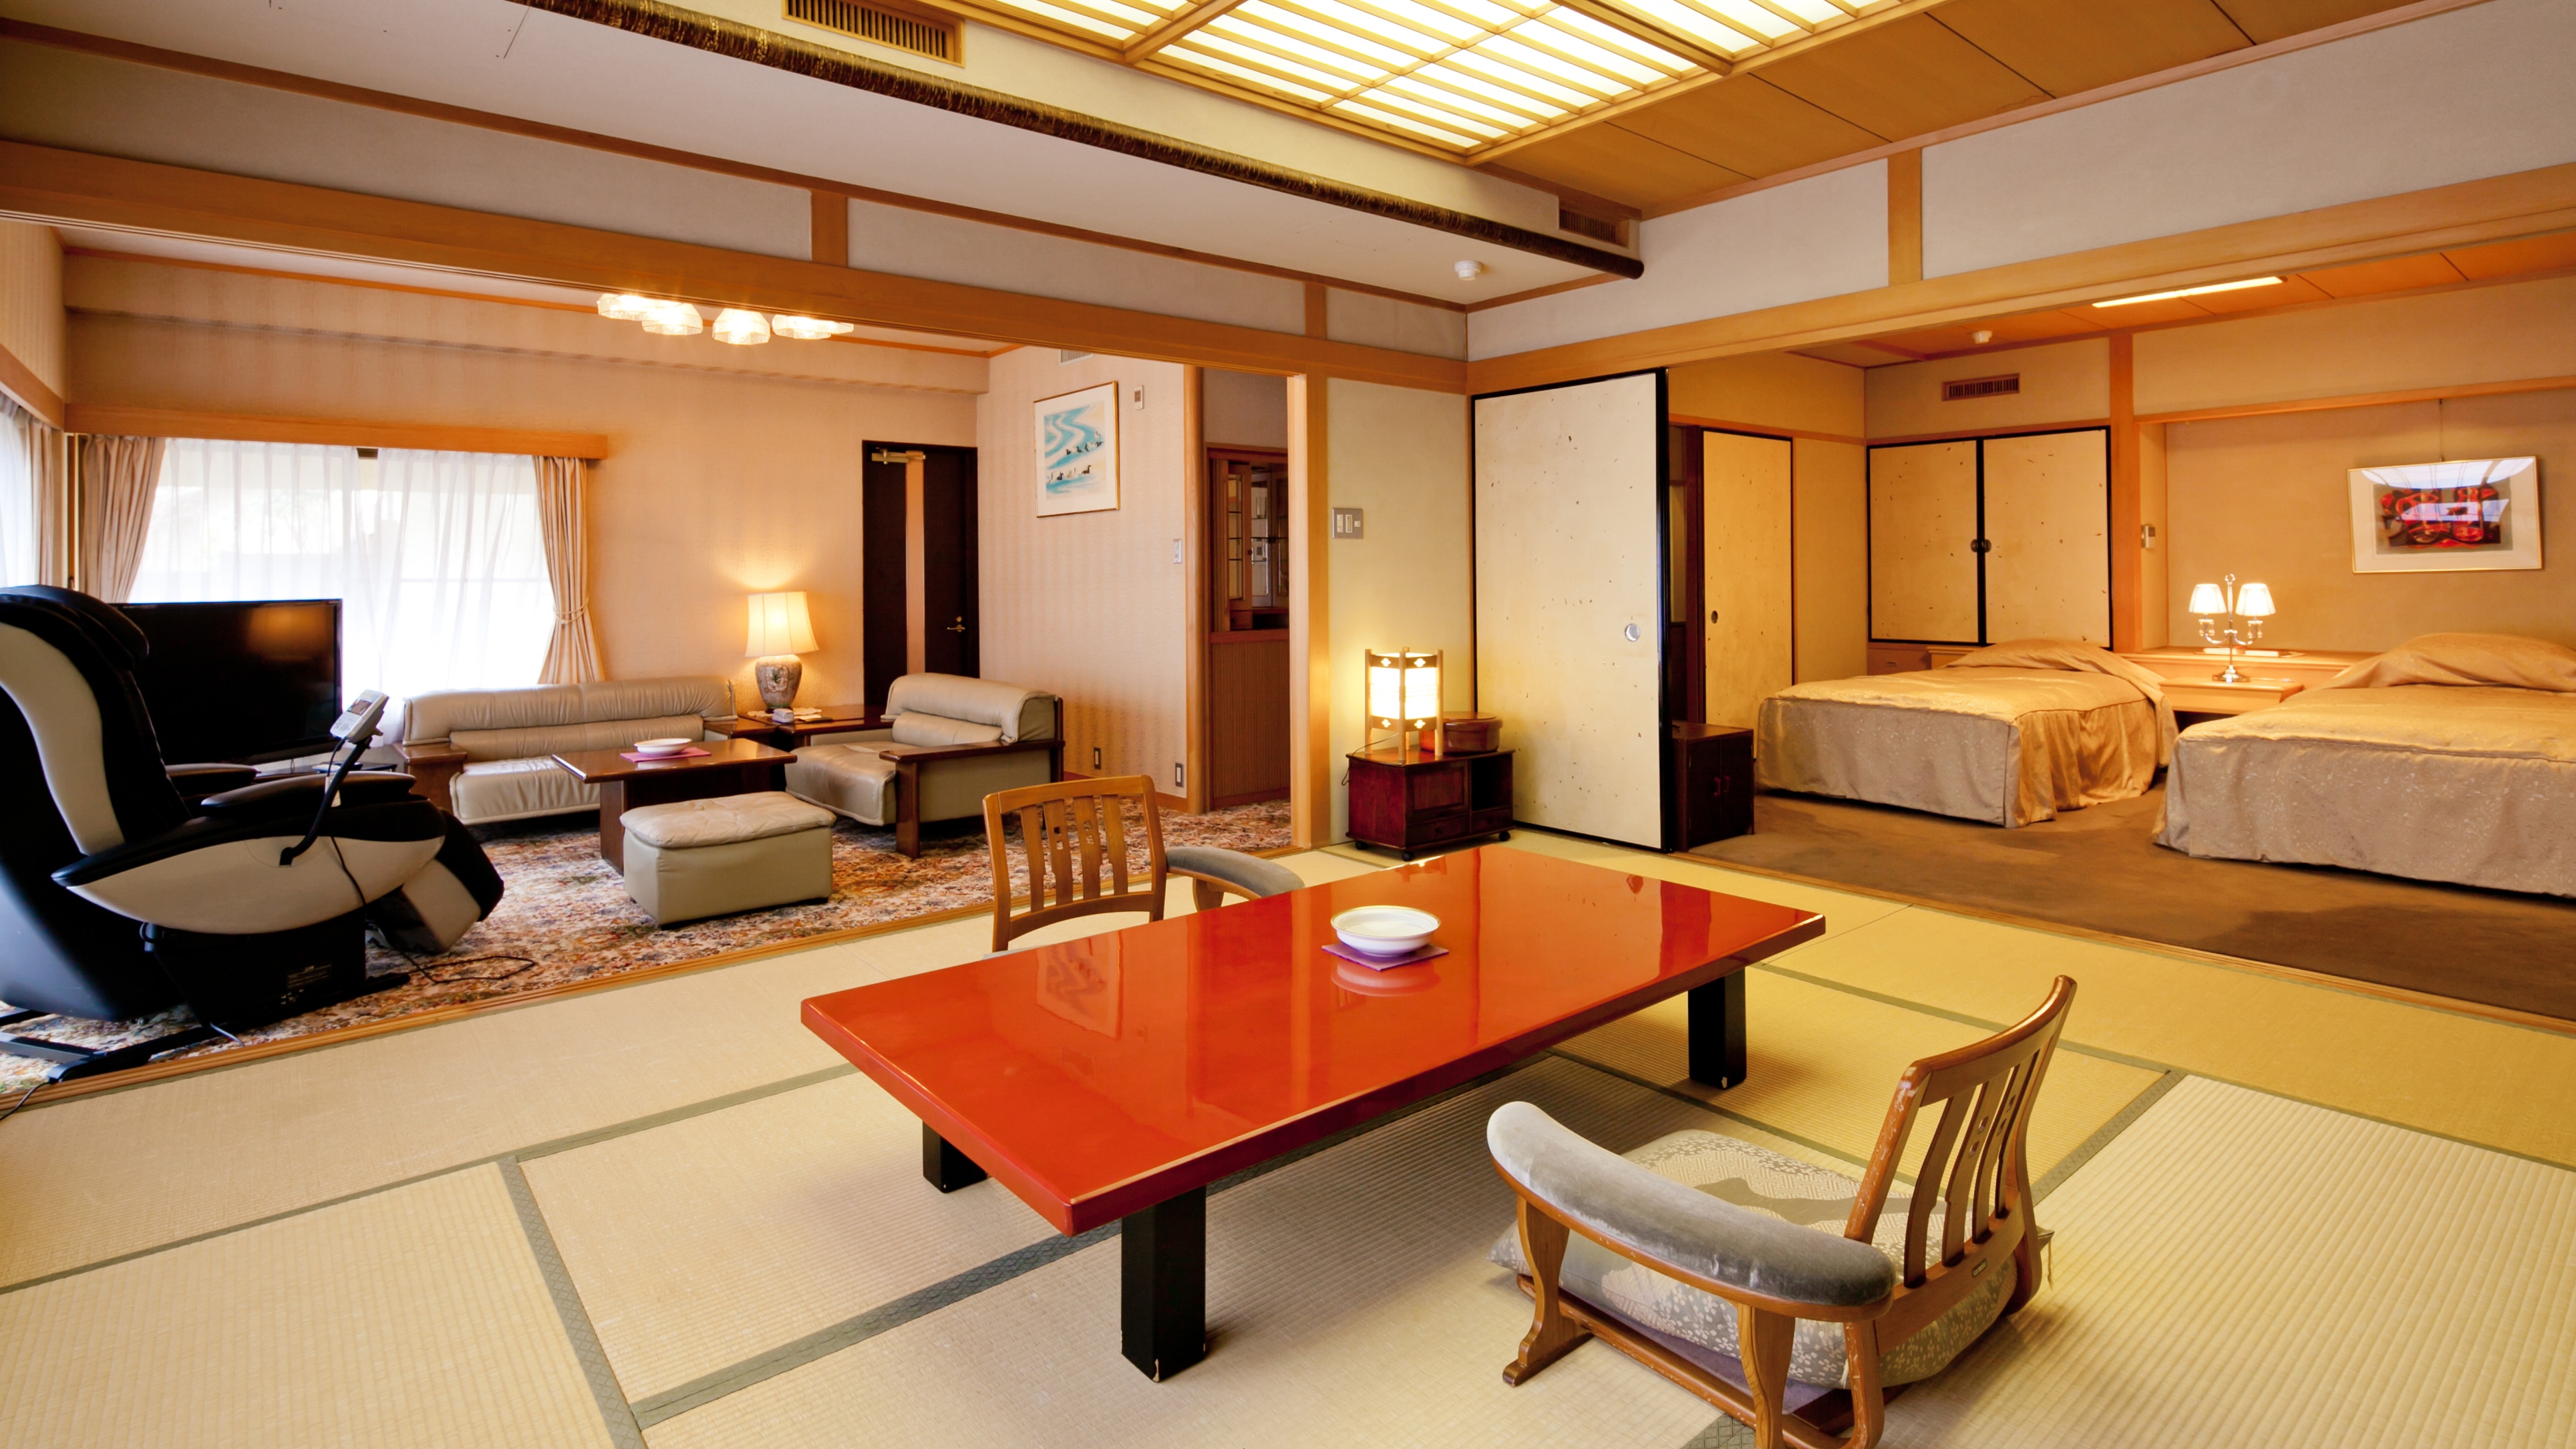 帶露天浴池 ◆貴賓室 Gokusuitei-Yugao- ◆日西式房間（10張榻榻米）和西式房間（8.8張榻榻米）。